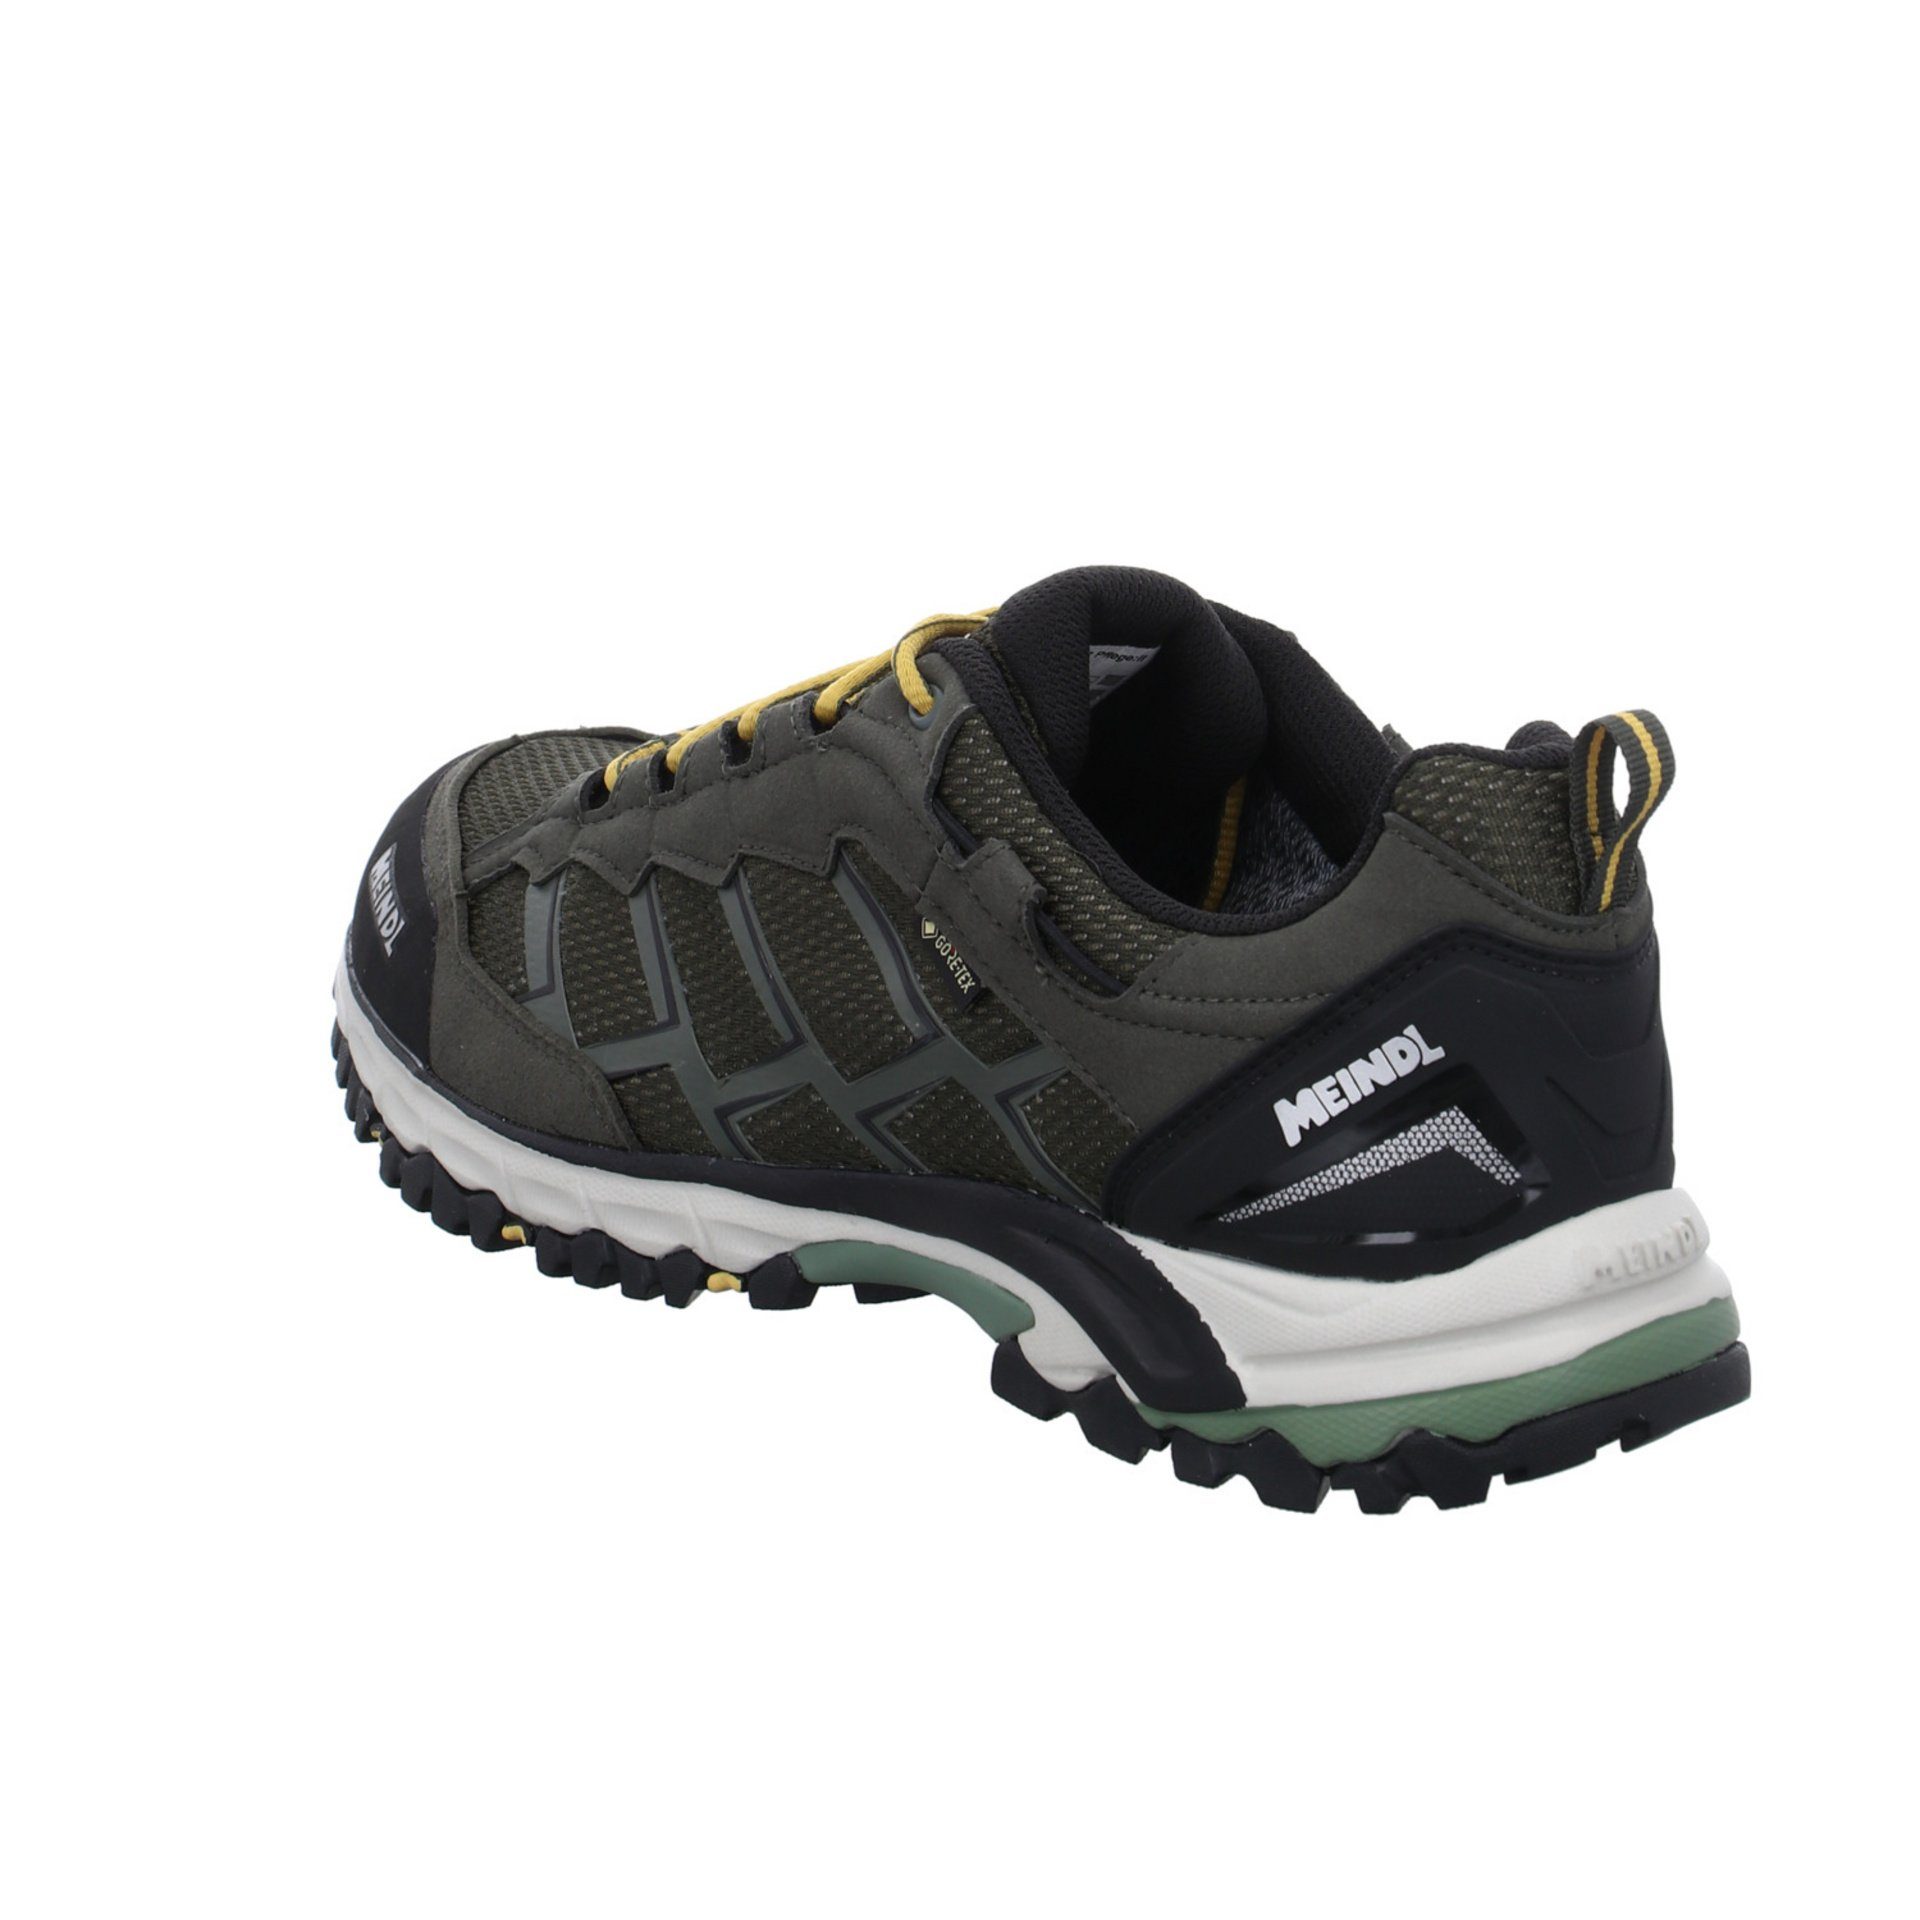 Meindl Herren Outdoor Schuhe Caribe Synthetikkombination olive GTX Outdoorschuh (403) Outdoorschuh